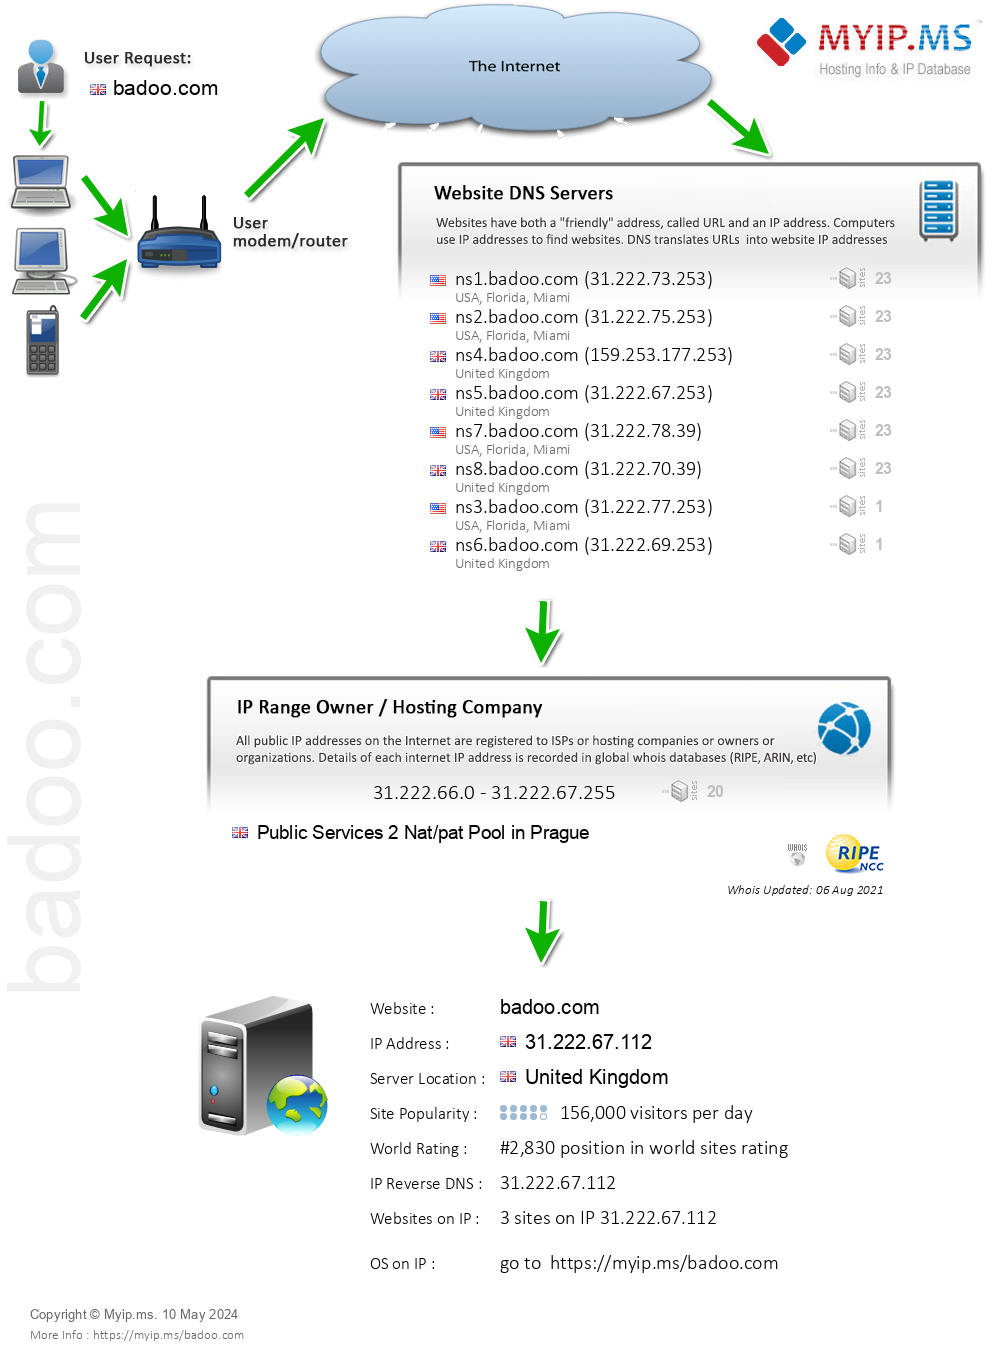 Badoo.com - Website Hosting Visual IP Diagram